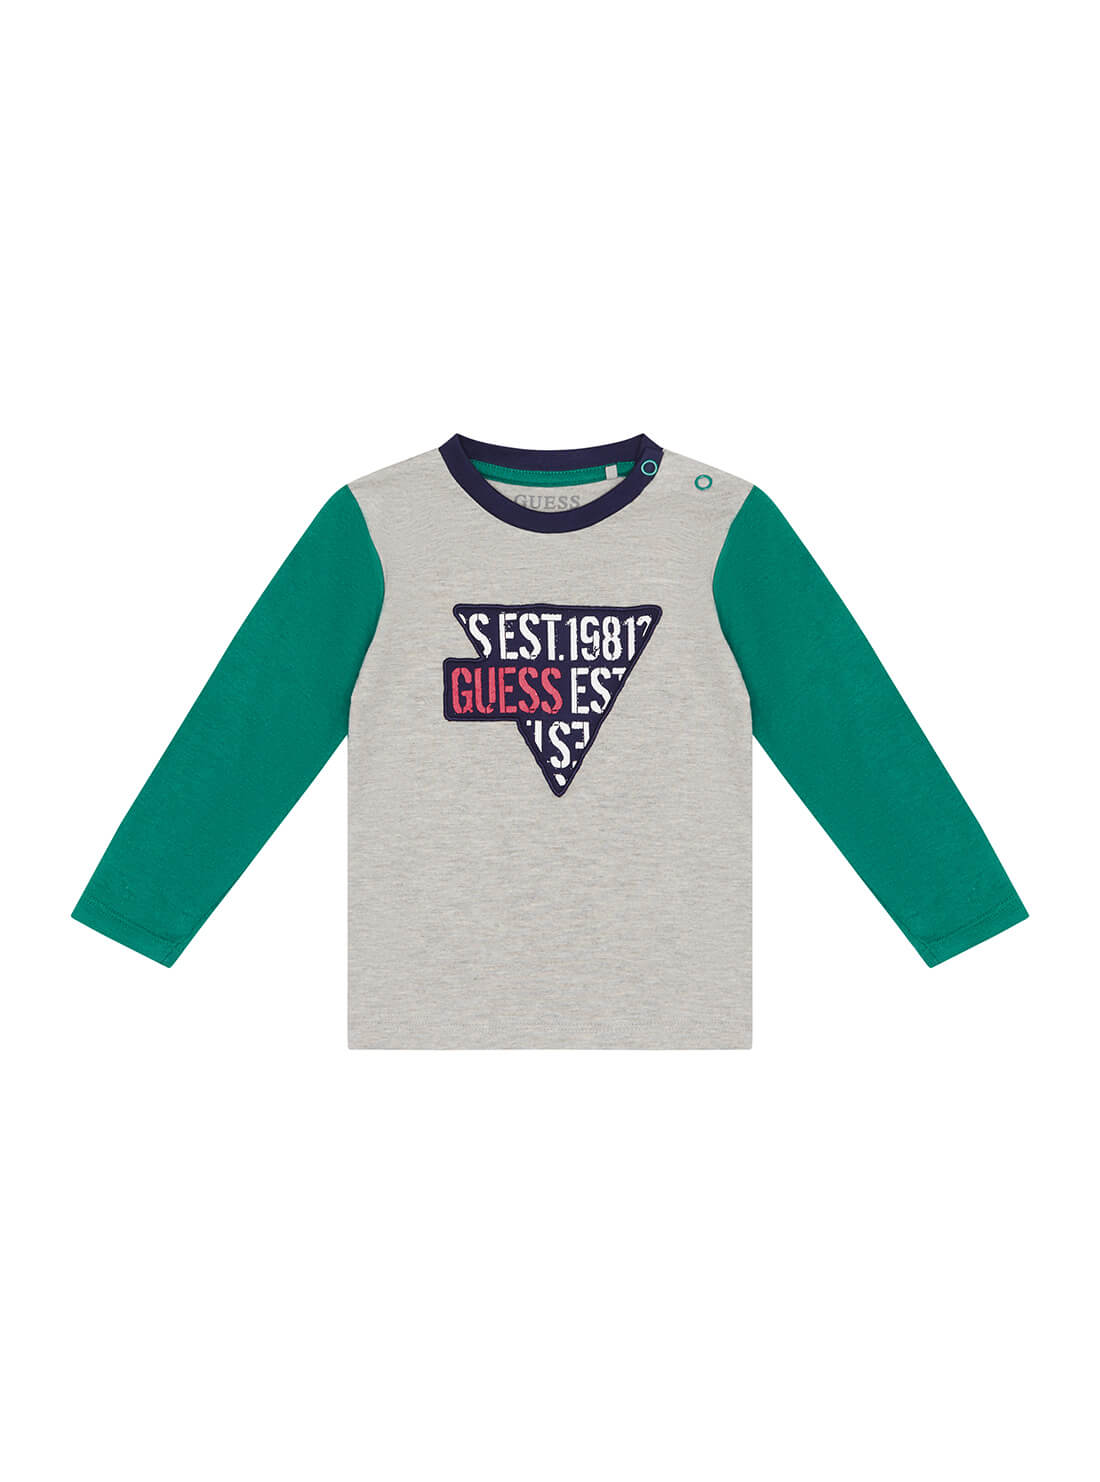 GUESS Kids Boys Grey Combo Green Logo T-Shirt (3-18m) I1BI01KAV20 Front View